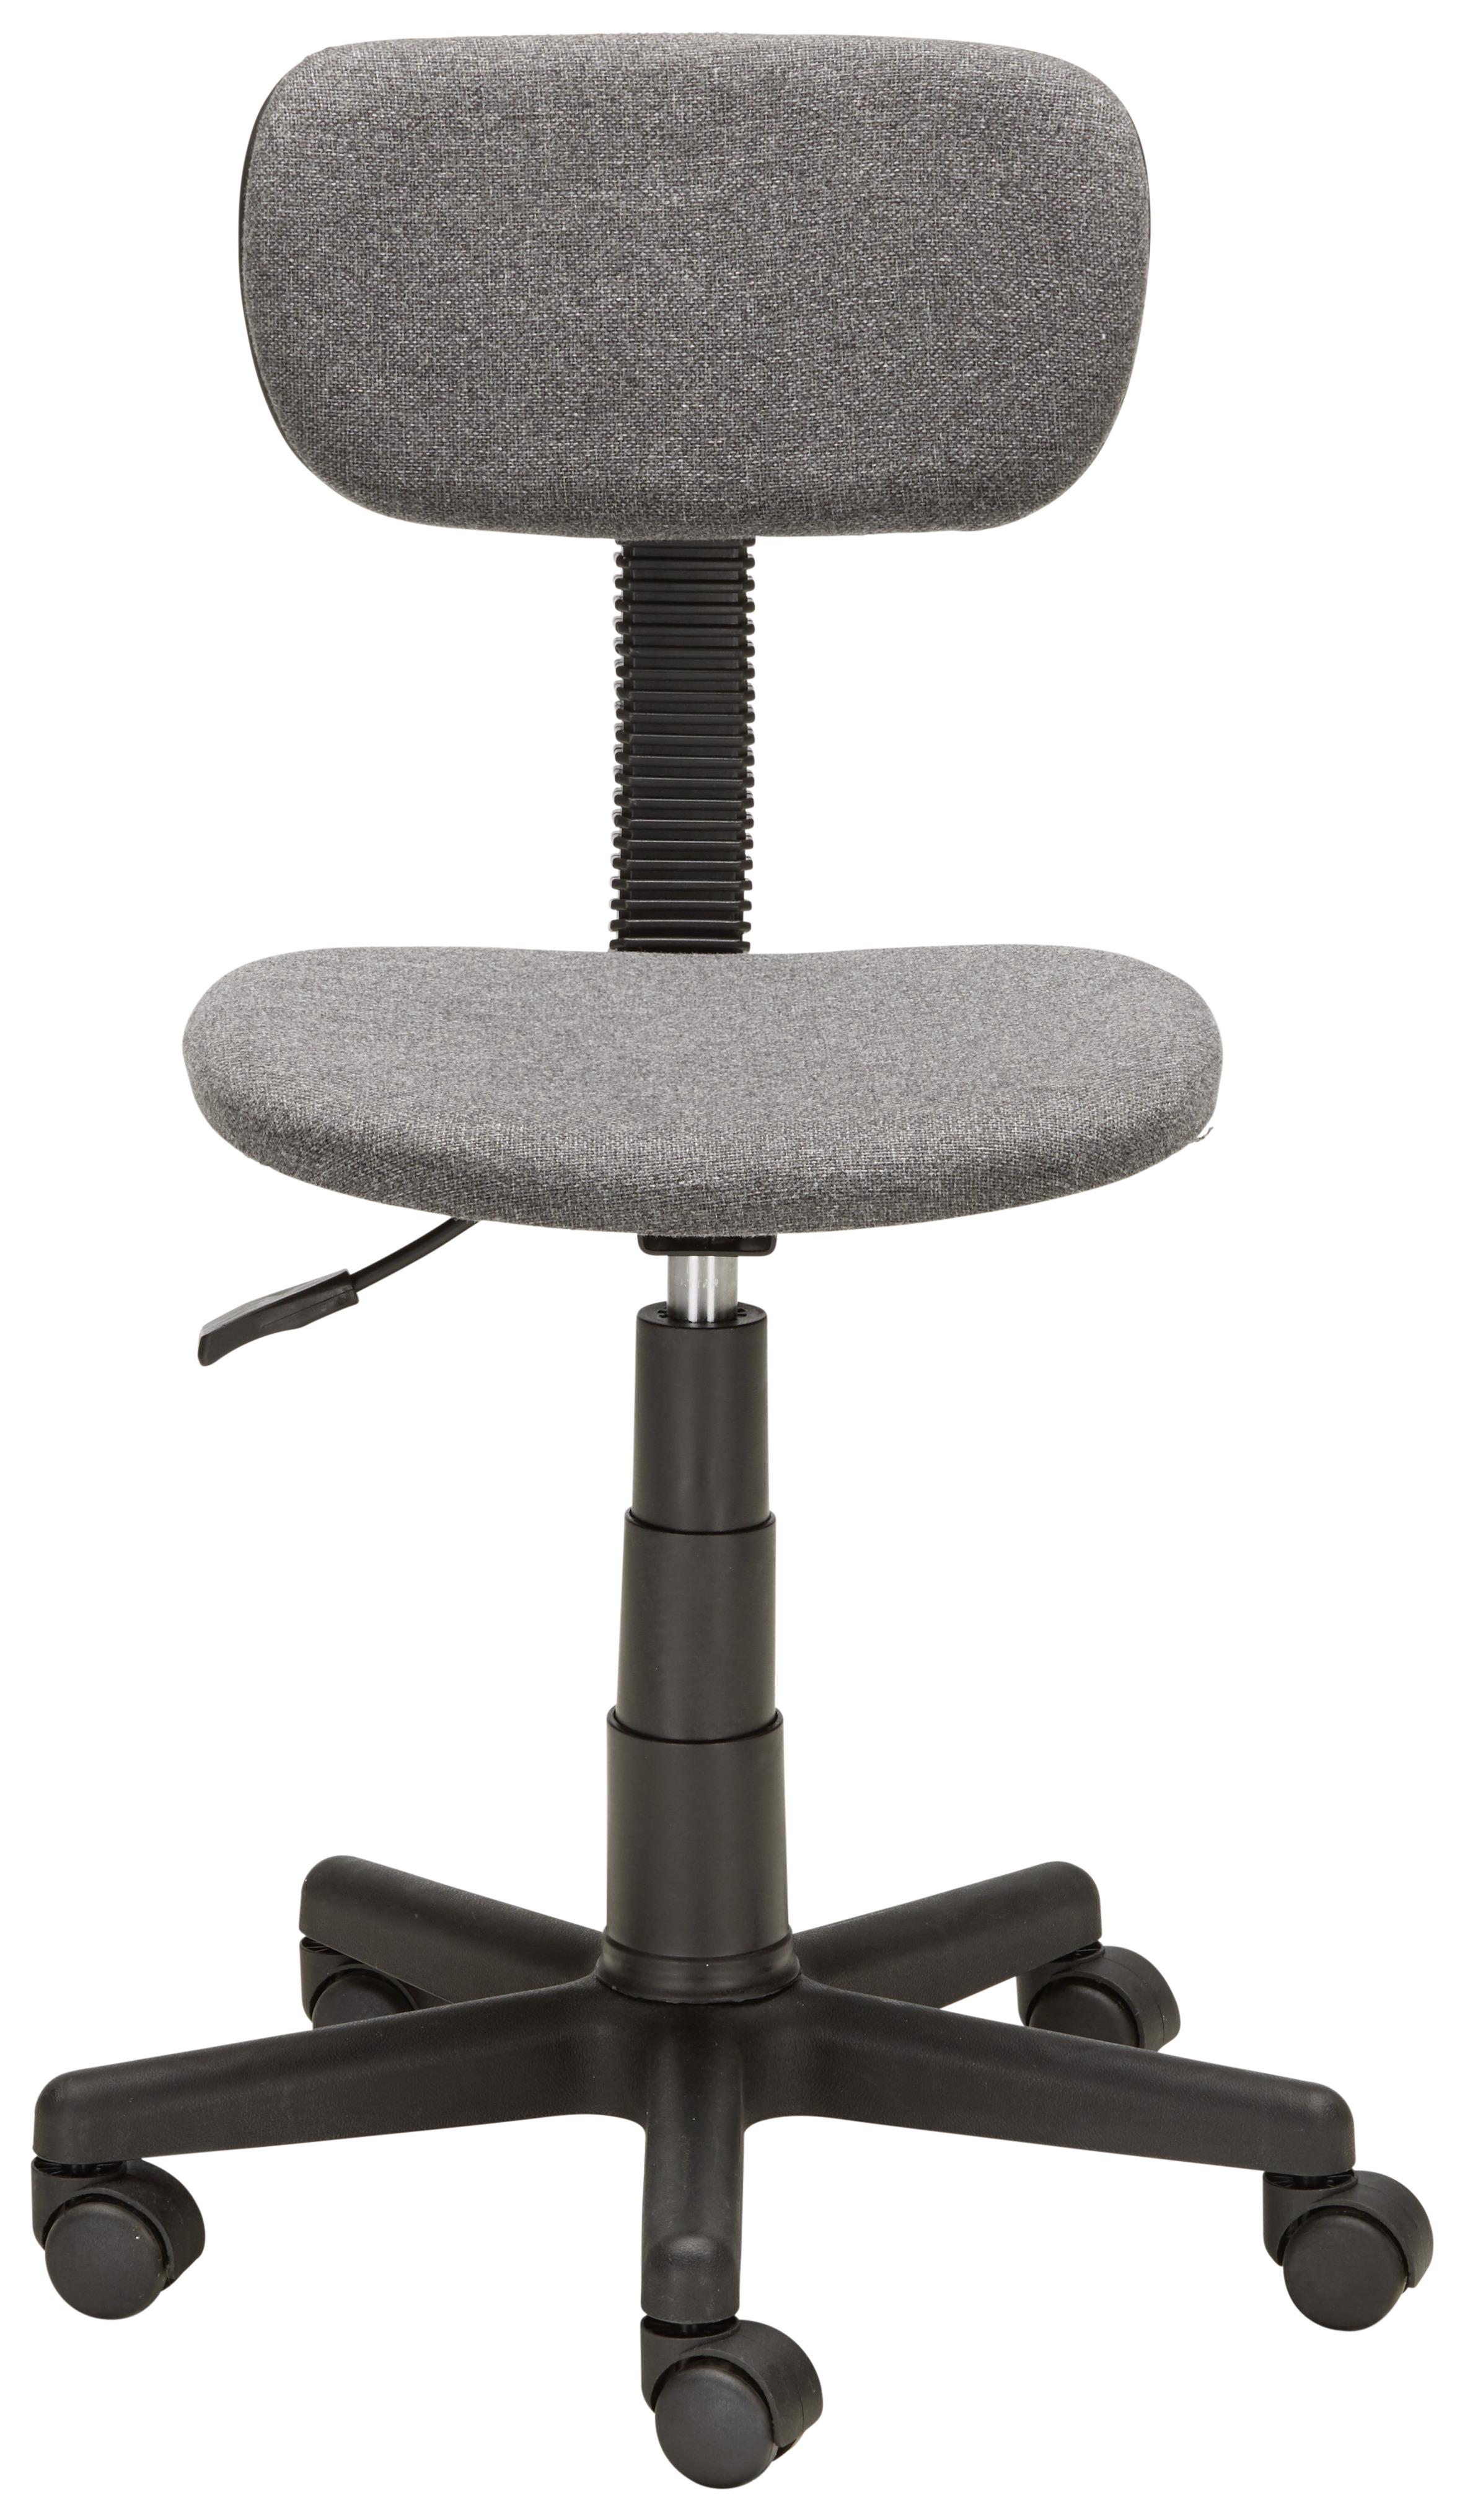 Otočná Židle Tim *cenový Trhák* - šedá/černá, Lifestyle, kov/textil (40/73-85/47cm) - Based